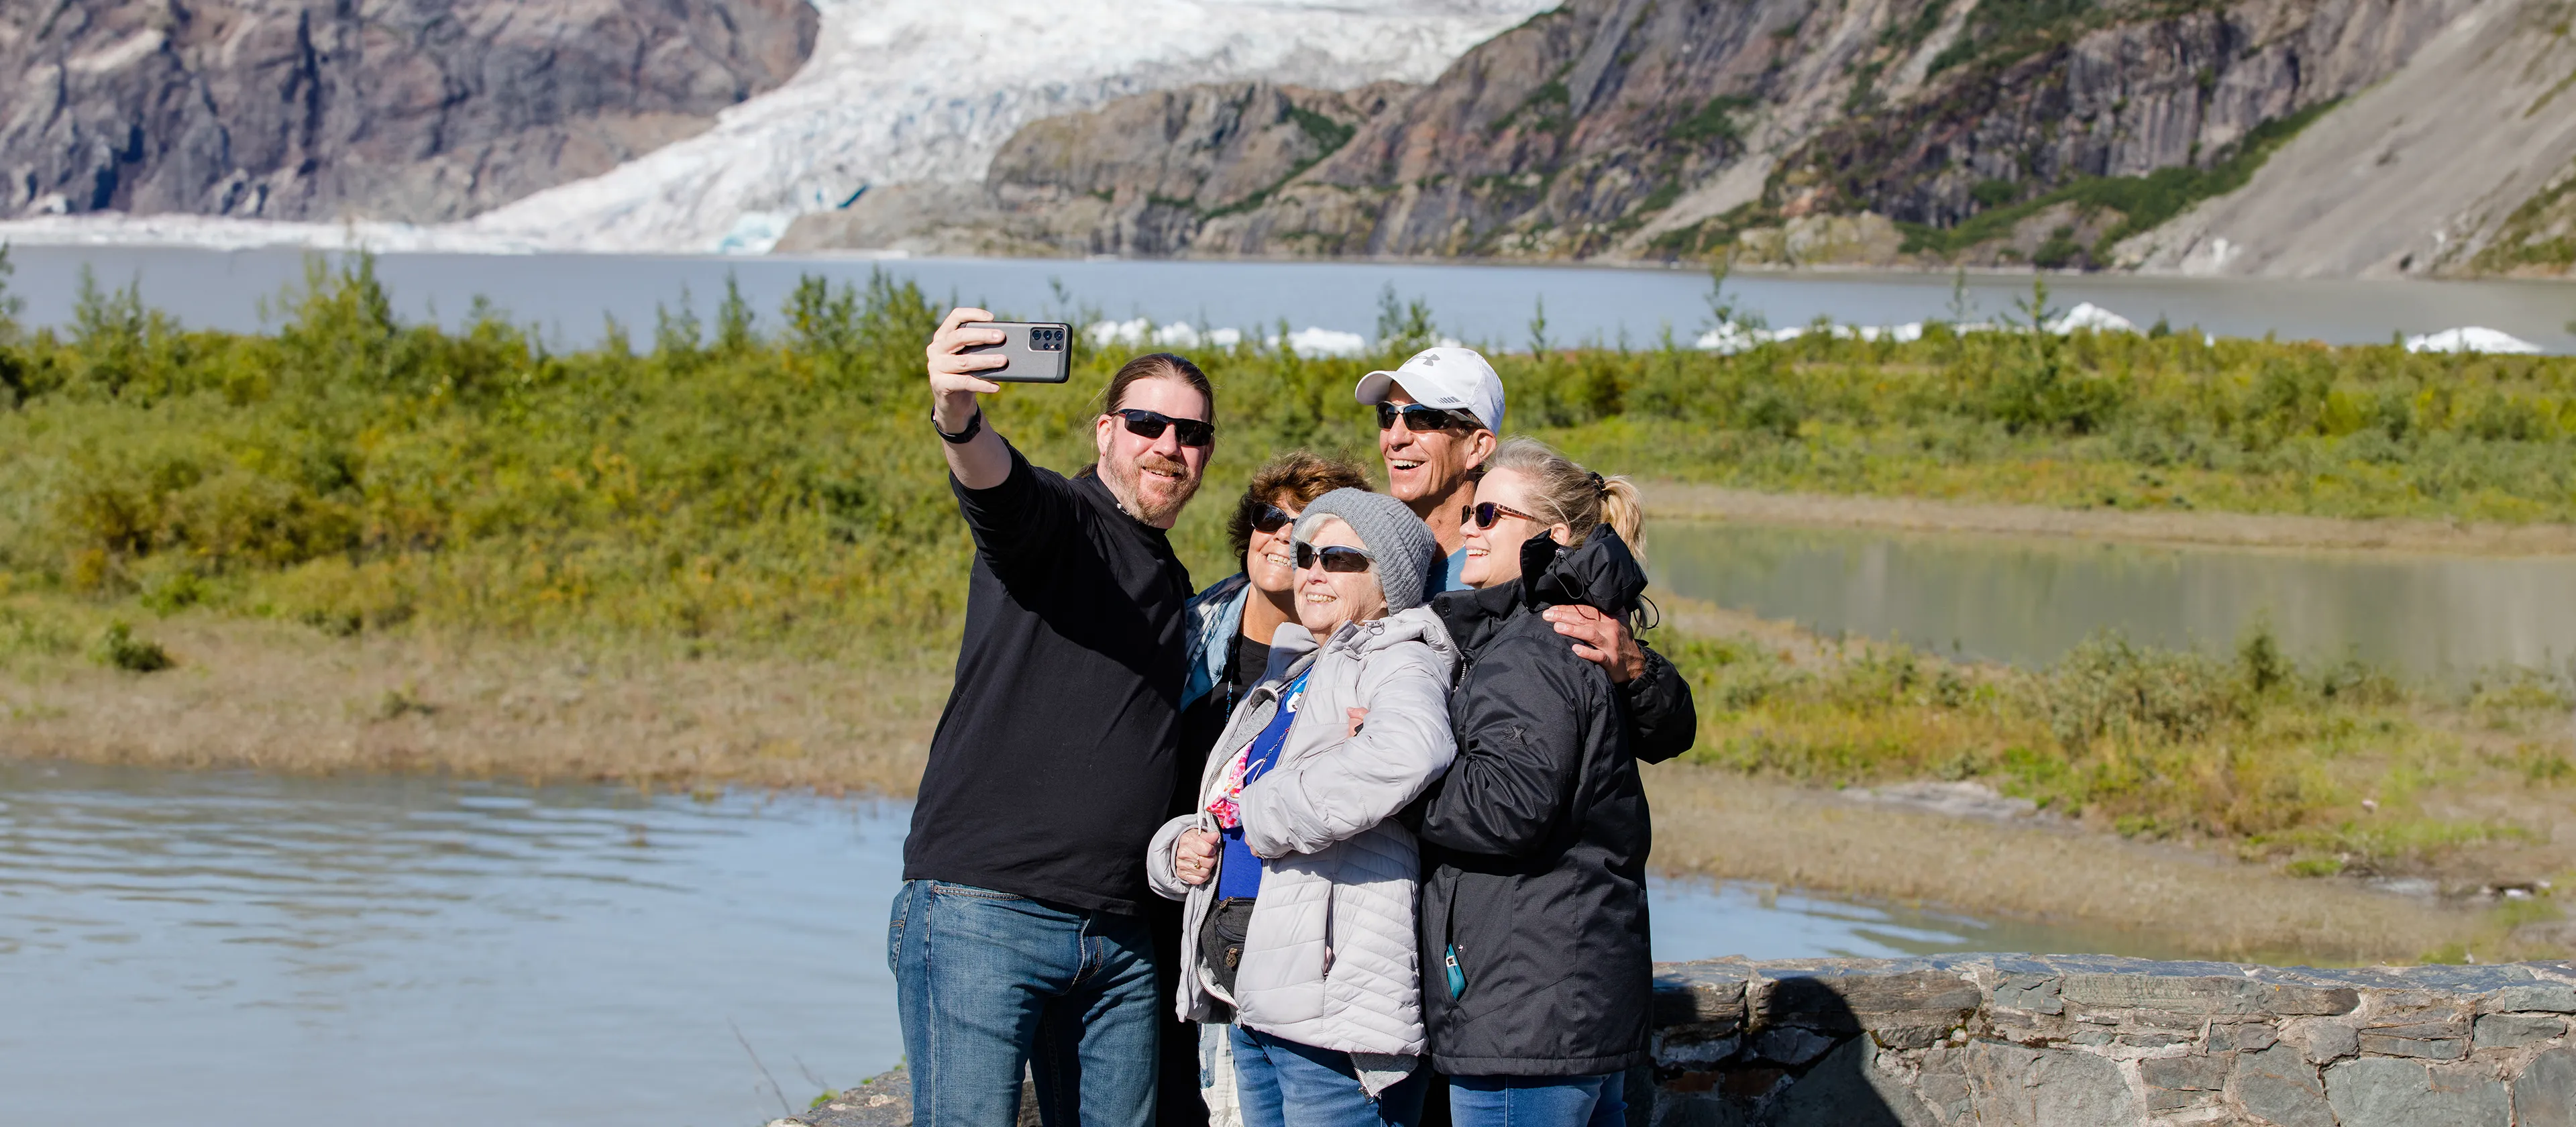 People taking a Selfie in Alaska